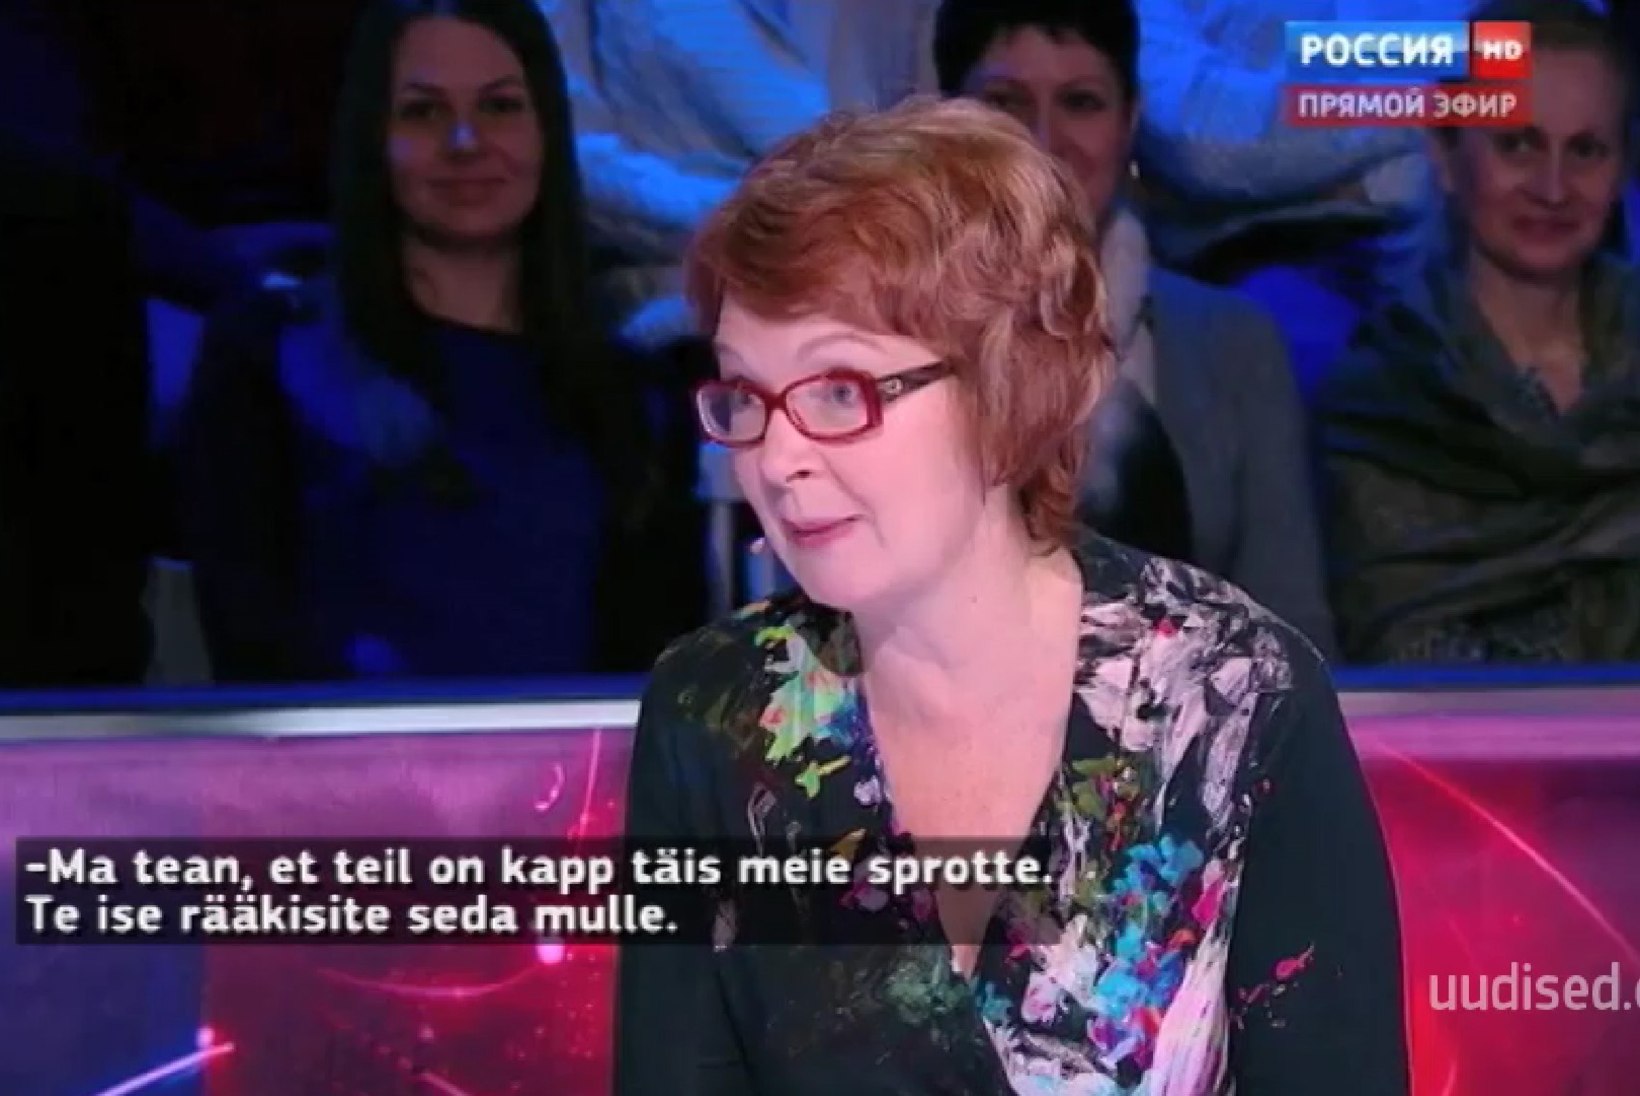 TV3 VIDEO | Venemaa poliitik telesaates Yana Toomile: teil peale Vana Tallinna likööri on seal üldse midagi?